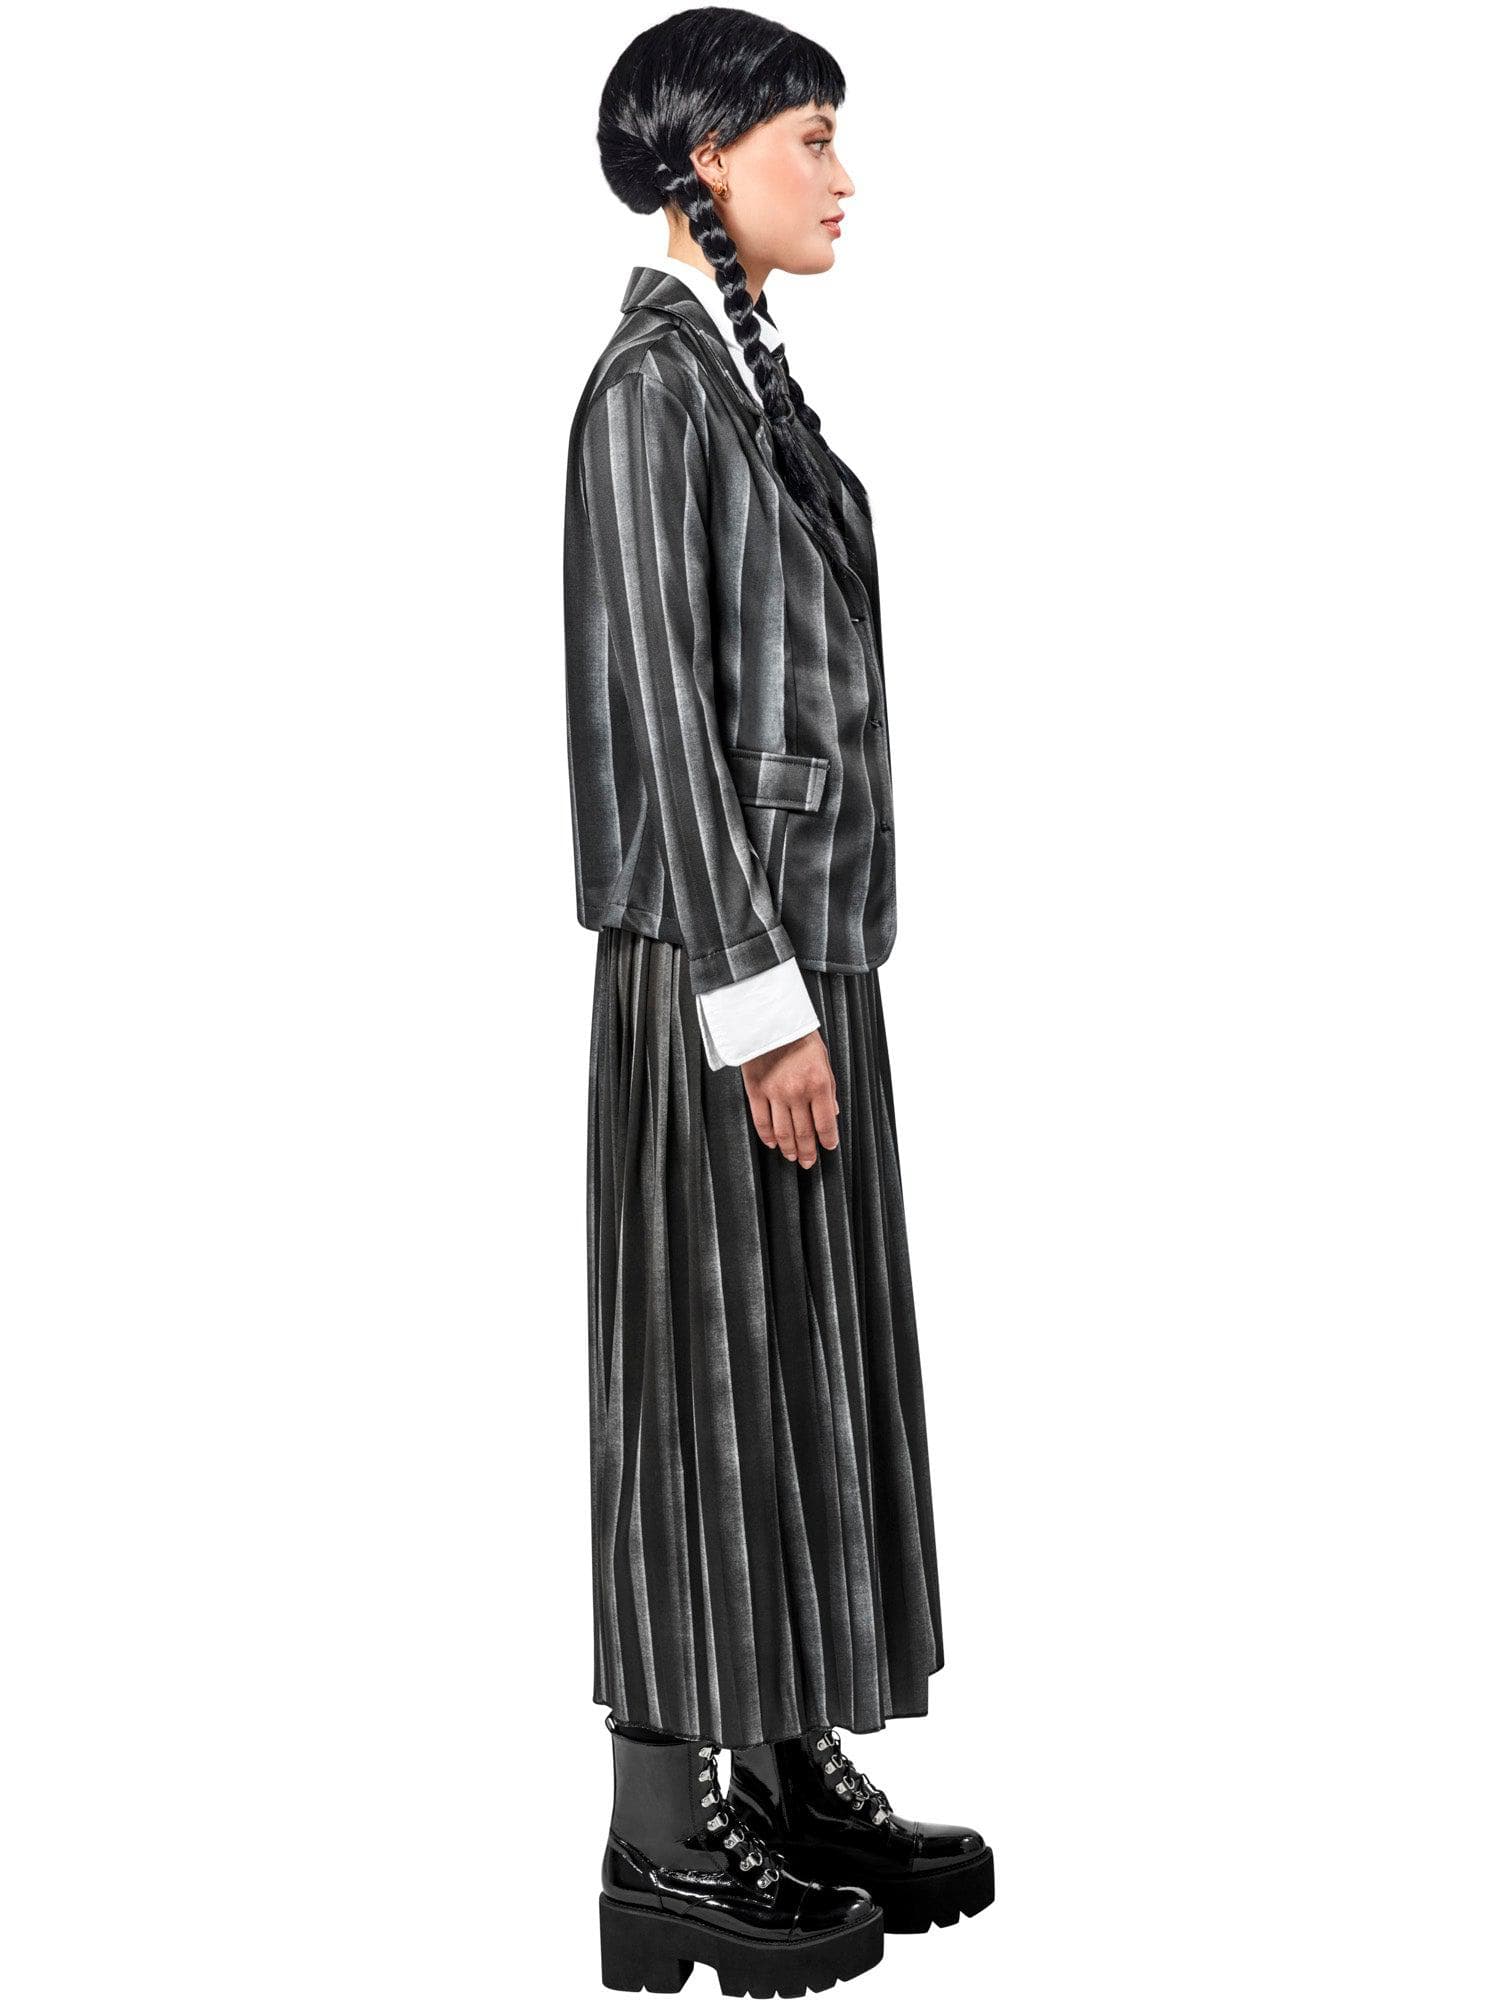 Wednesday Addams Nevermore Academy Uniform Adult Costume - costumes.com